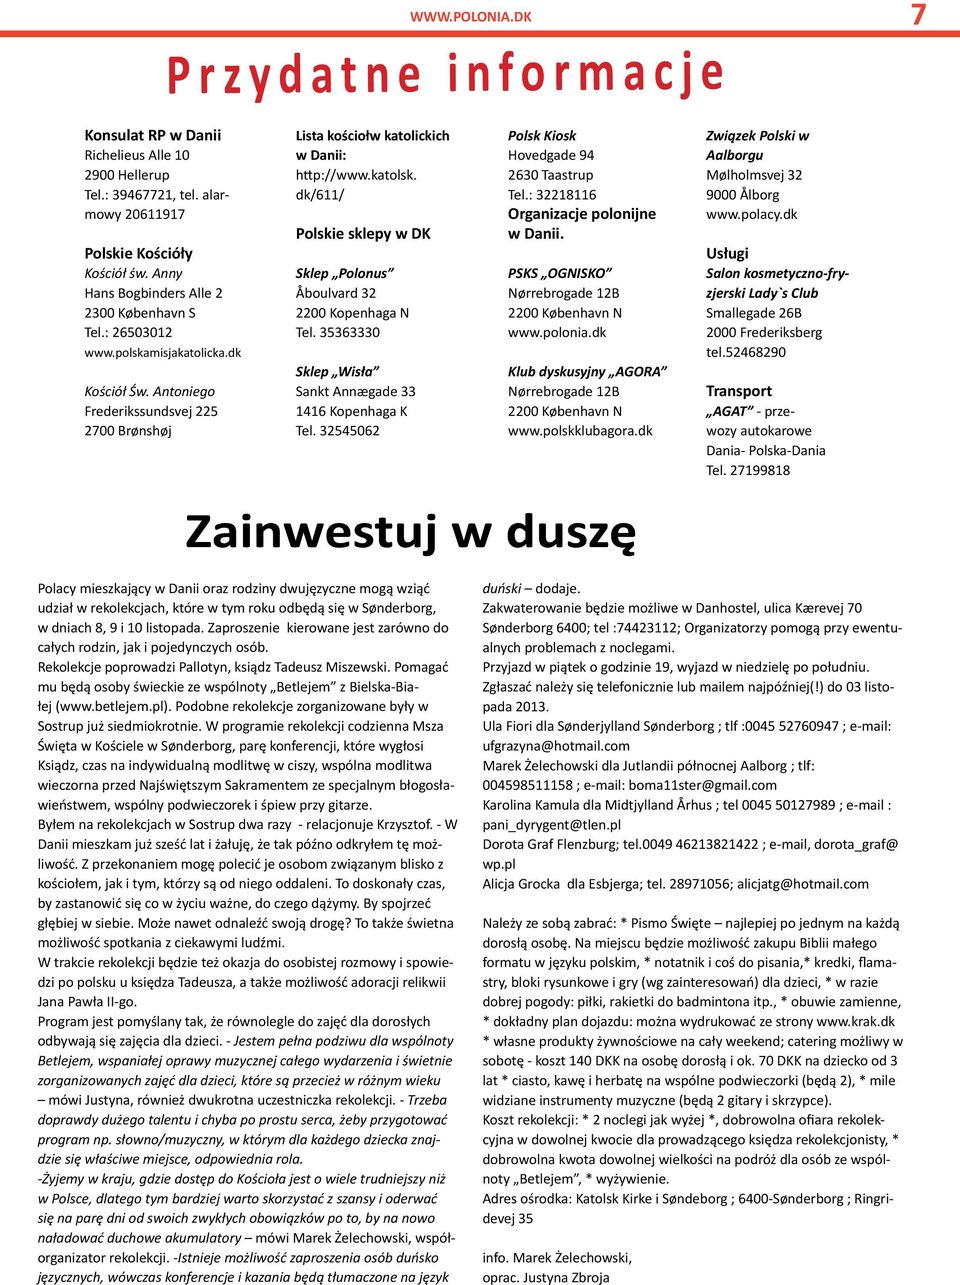 Darmowy. Czy jesteście gotowi na VELUX EUROVolley2013? polski miesięcznik!  Polski miesięcznik wydawany w Danii Polak, patriota i całkiem spora kasa -  PDF Darmowe pobieranie